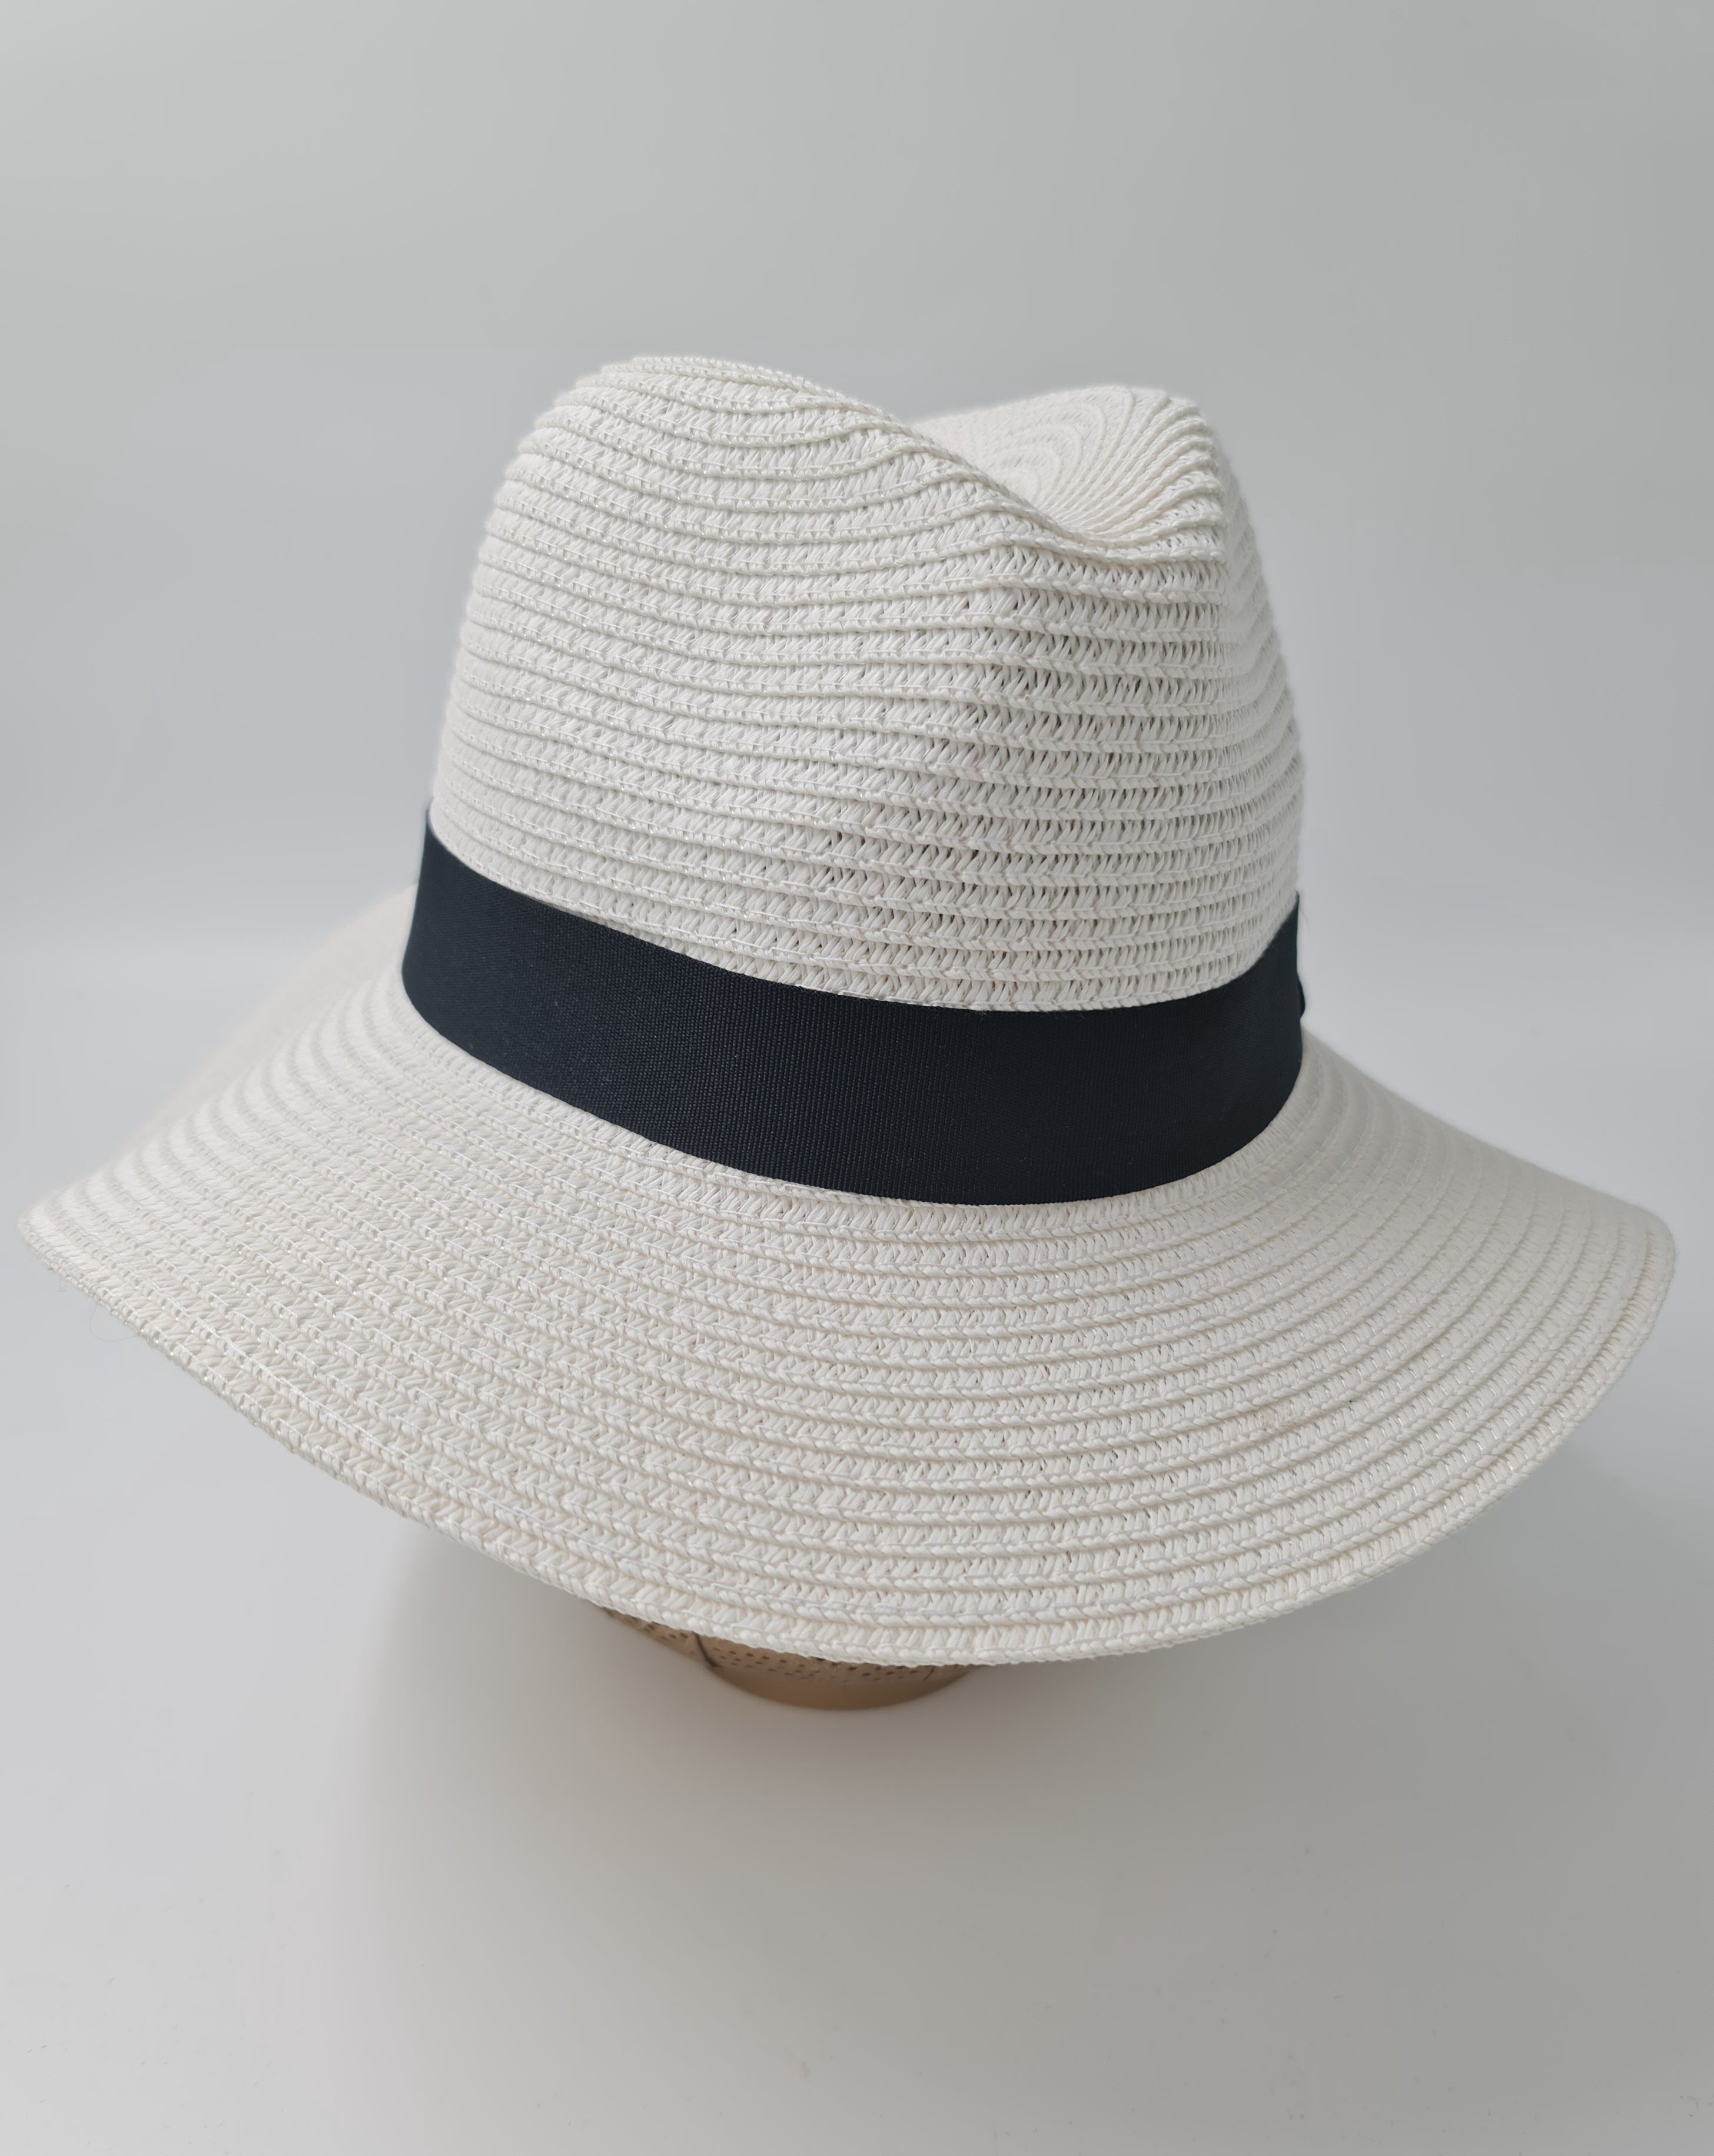 Free Spirit Classic Panama Summer Hat-White